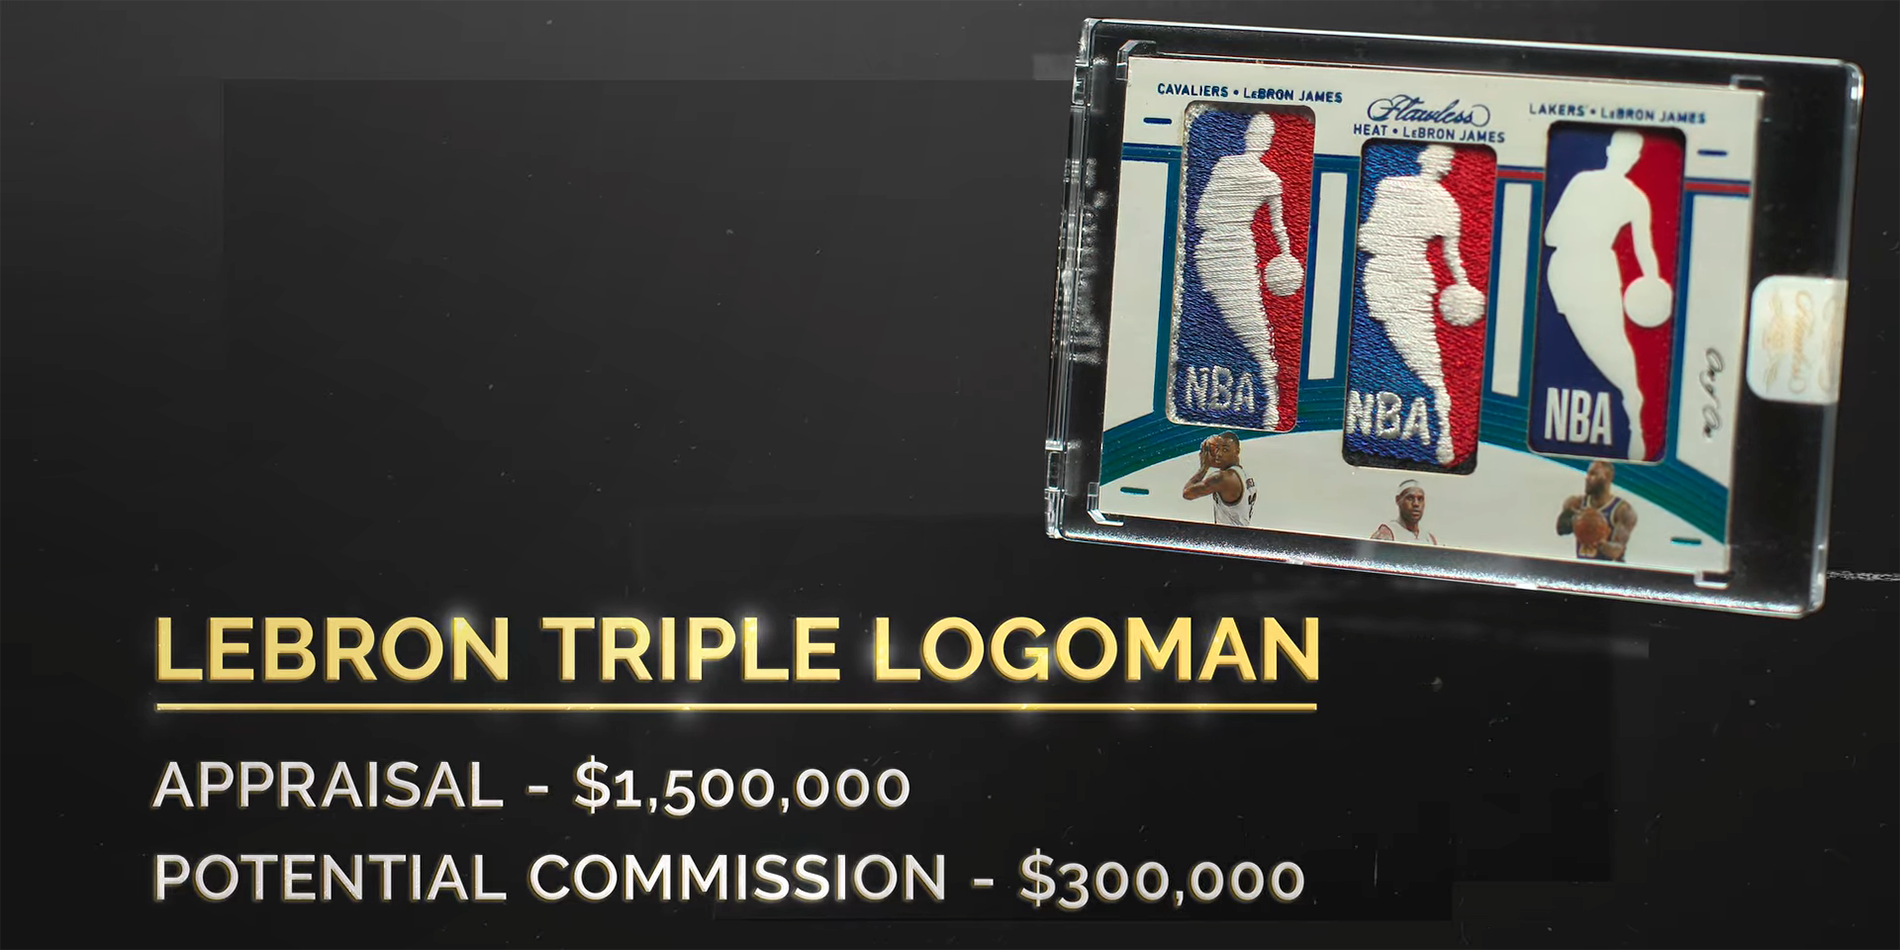 King Of Collectibles: The Goldin Touch – LeBron James Triple Logoman Card Mania explicado